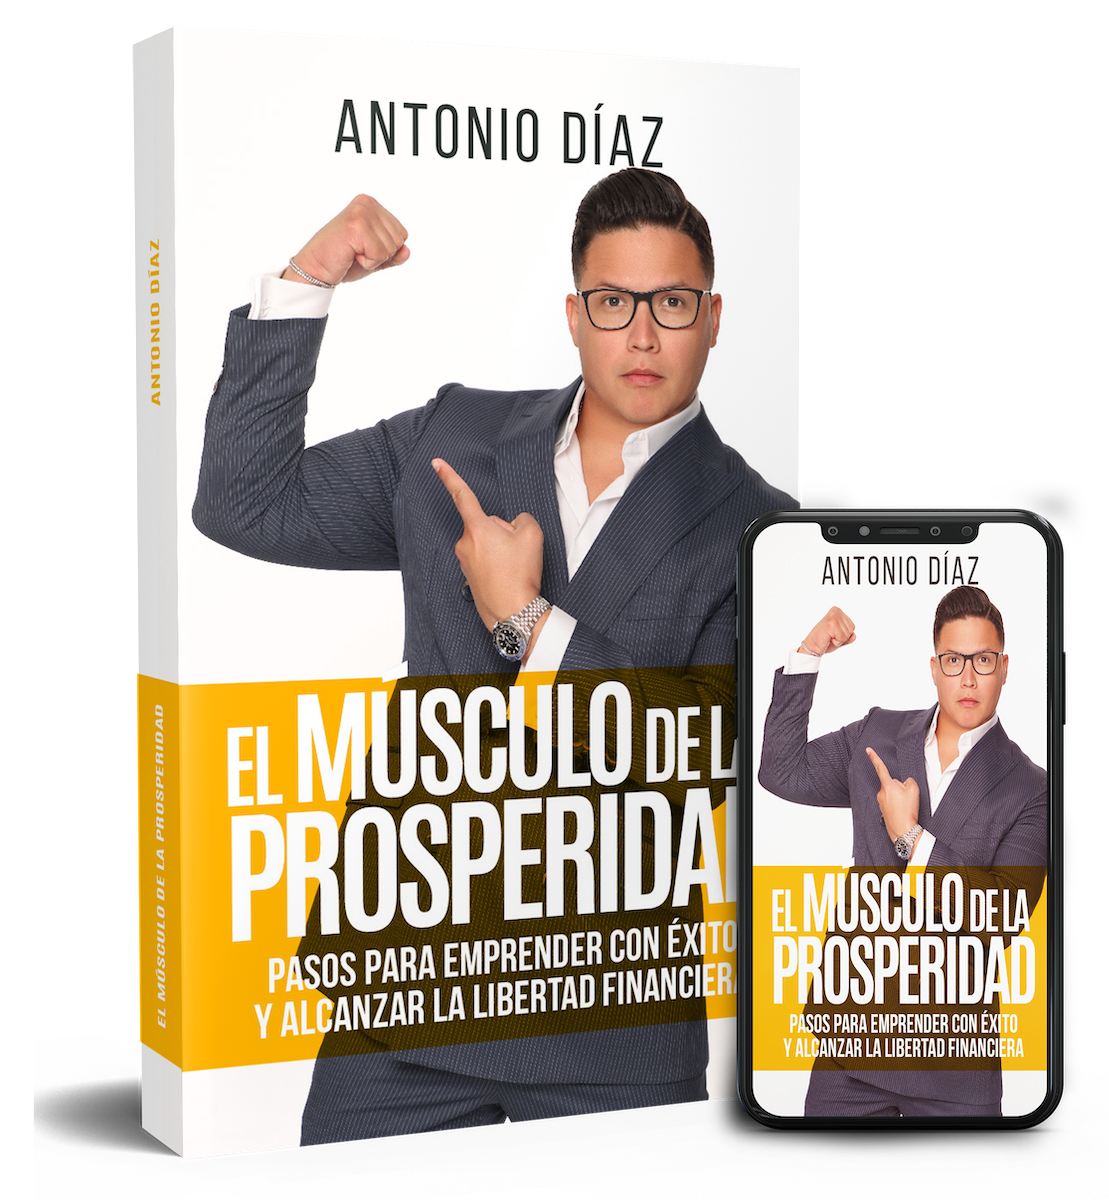 Antonio Díaz invita a los emprendedores a ejercitar “El músculo de la prosperidad”